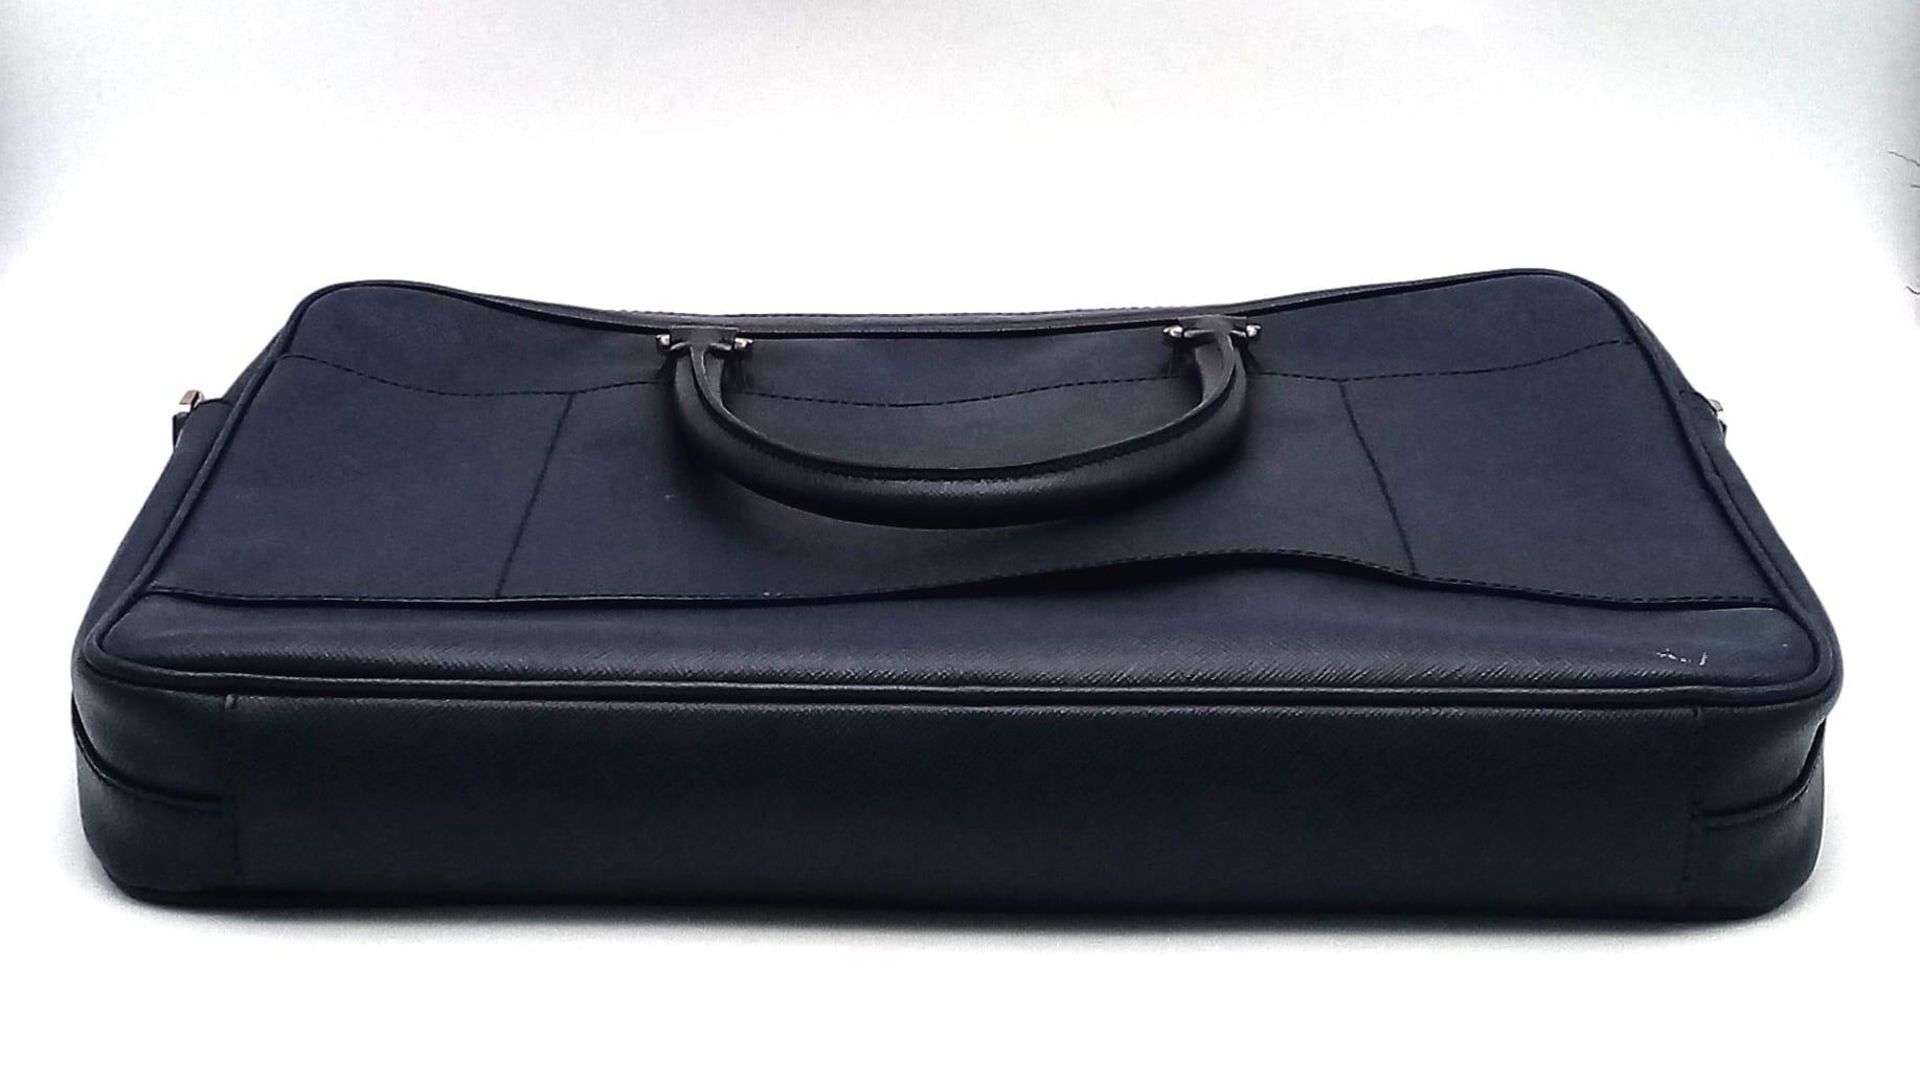 A Prada Saffiano Briefcase. Navy blue textured leather exterior. Prada logo badge. Name tag. Quality - Image 3 of 6